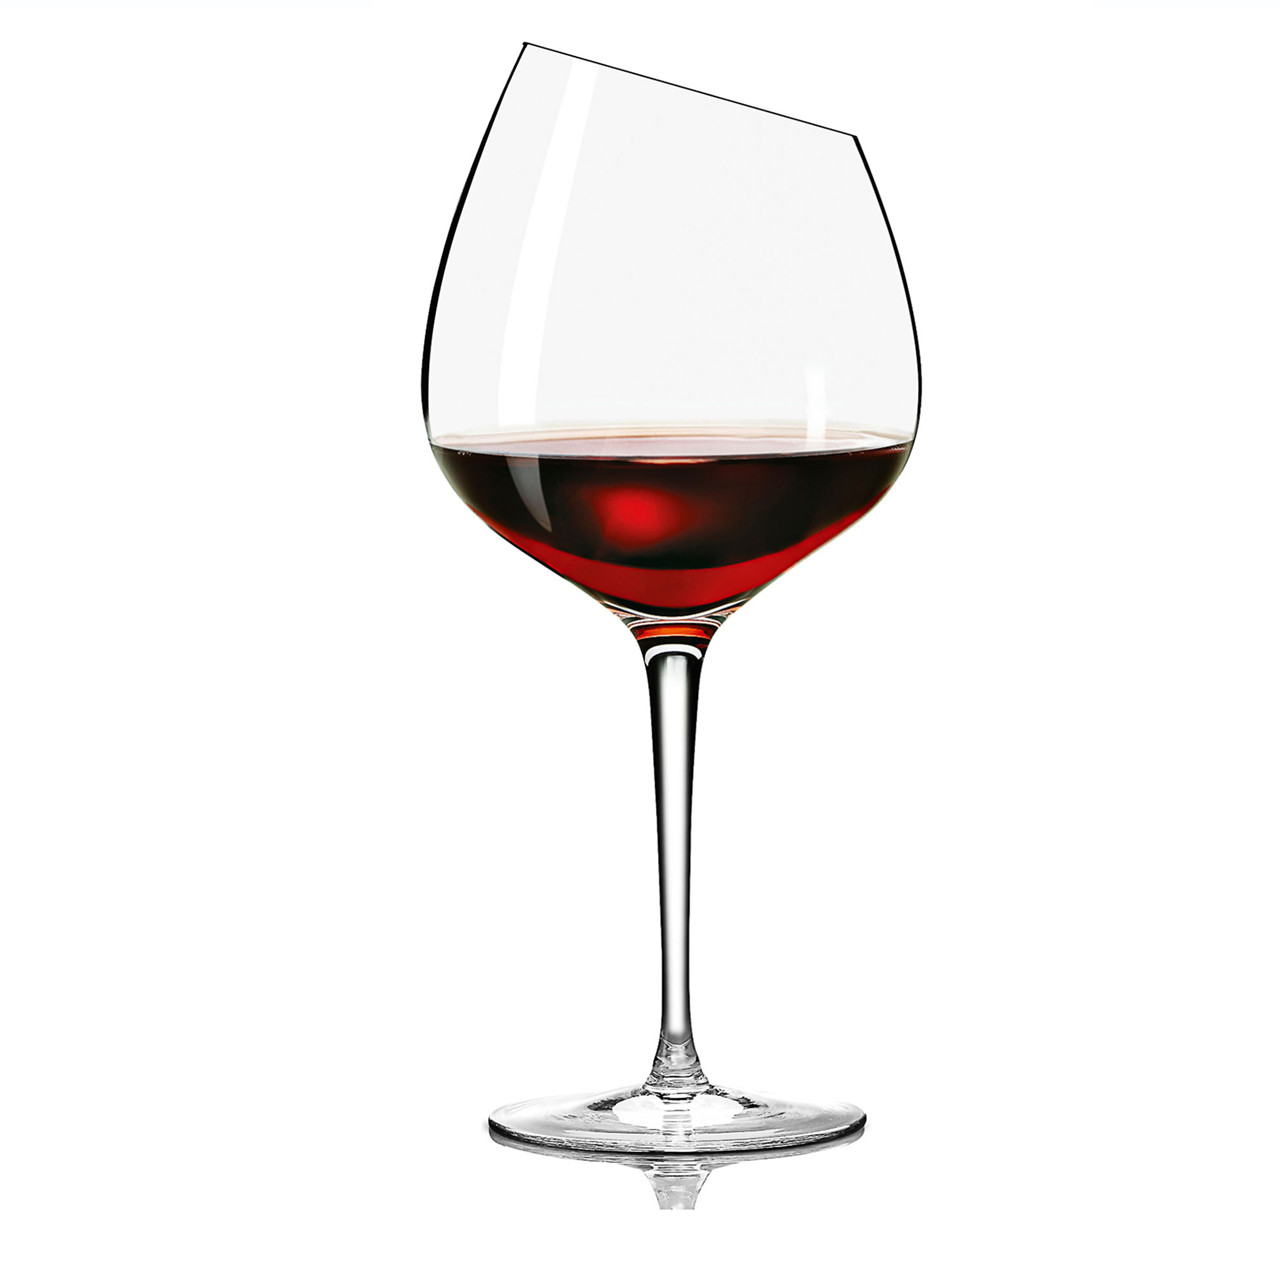 EVA SOLO Bourgogne vinglas 2 stk.